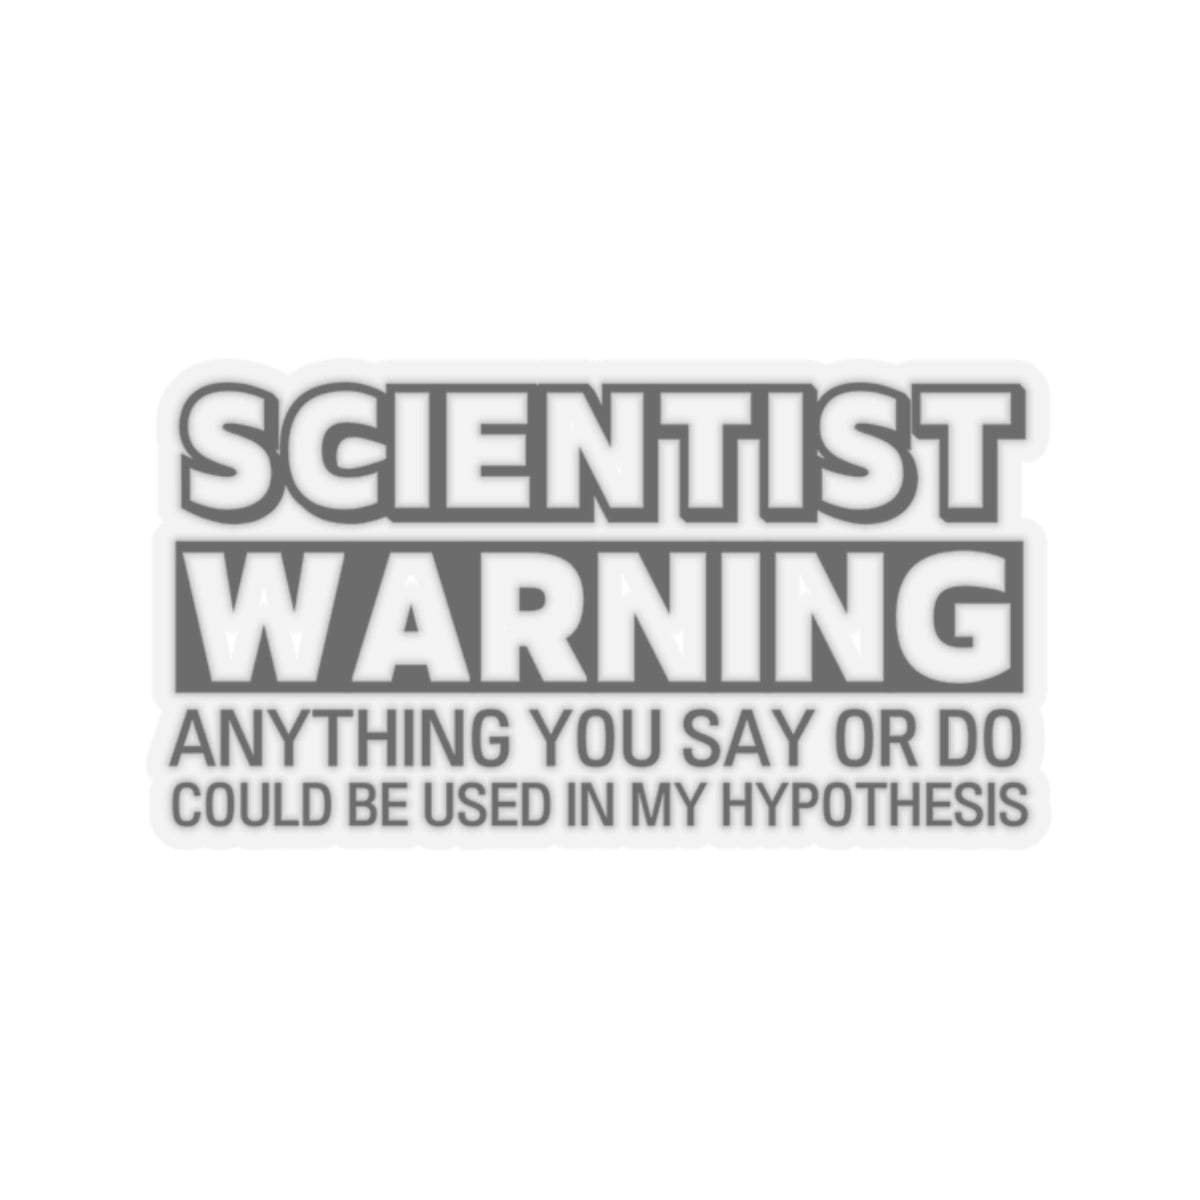 Scientist Warning Kiss-Cut Stickers (Black)